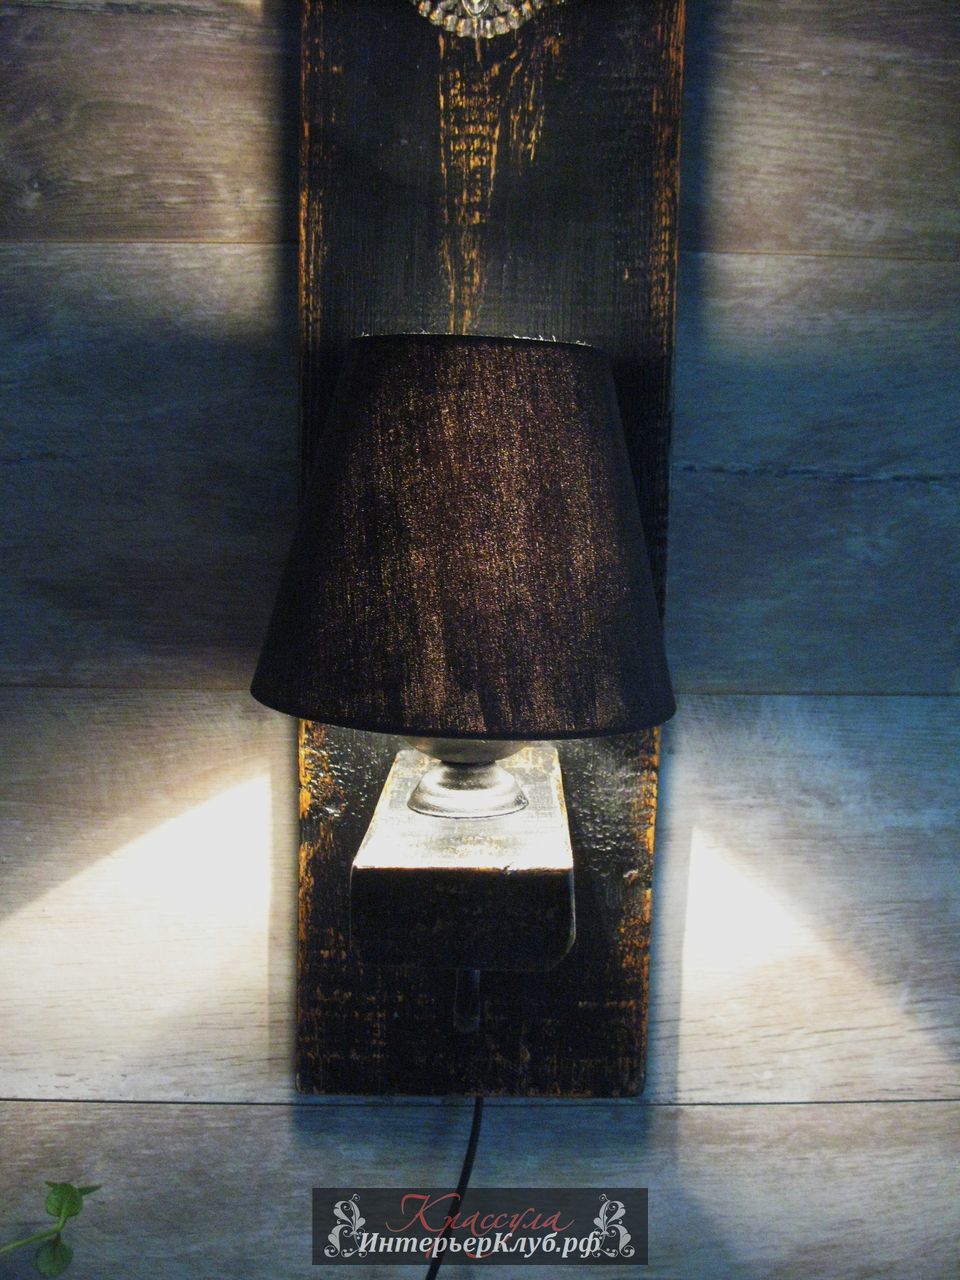 118 Светильник Керо - возможно в двух вариантах - с лампочкой Эдисона и стеклом или с абажуром